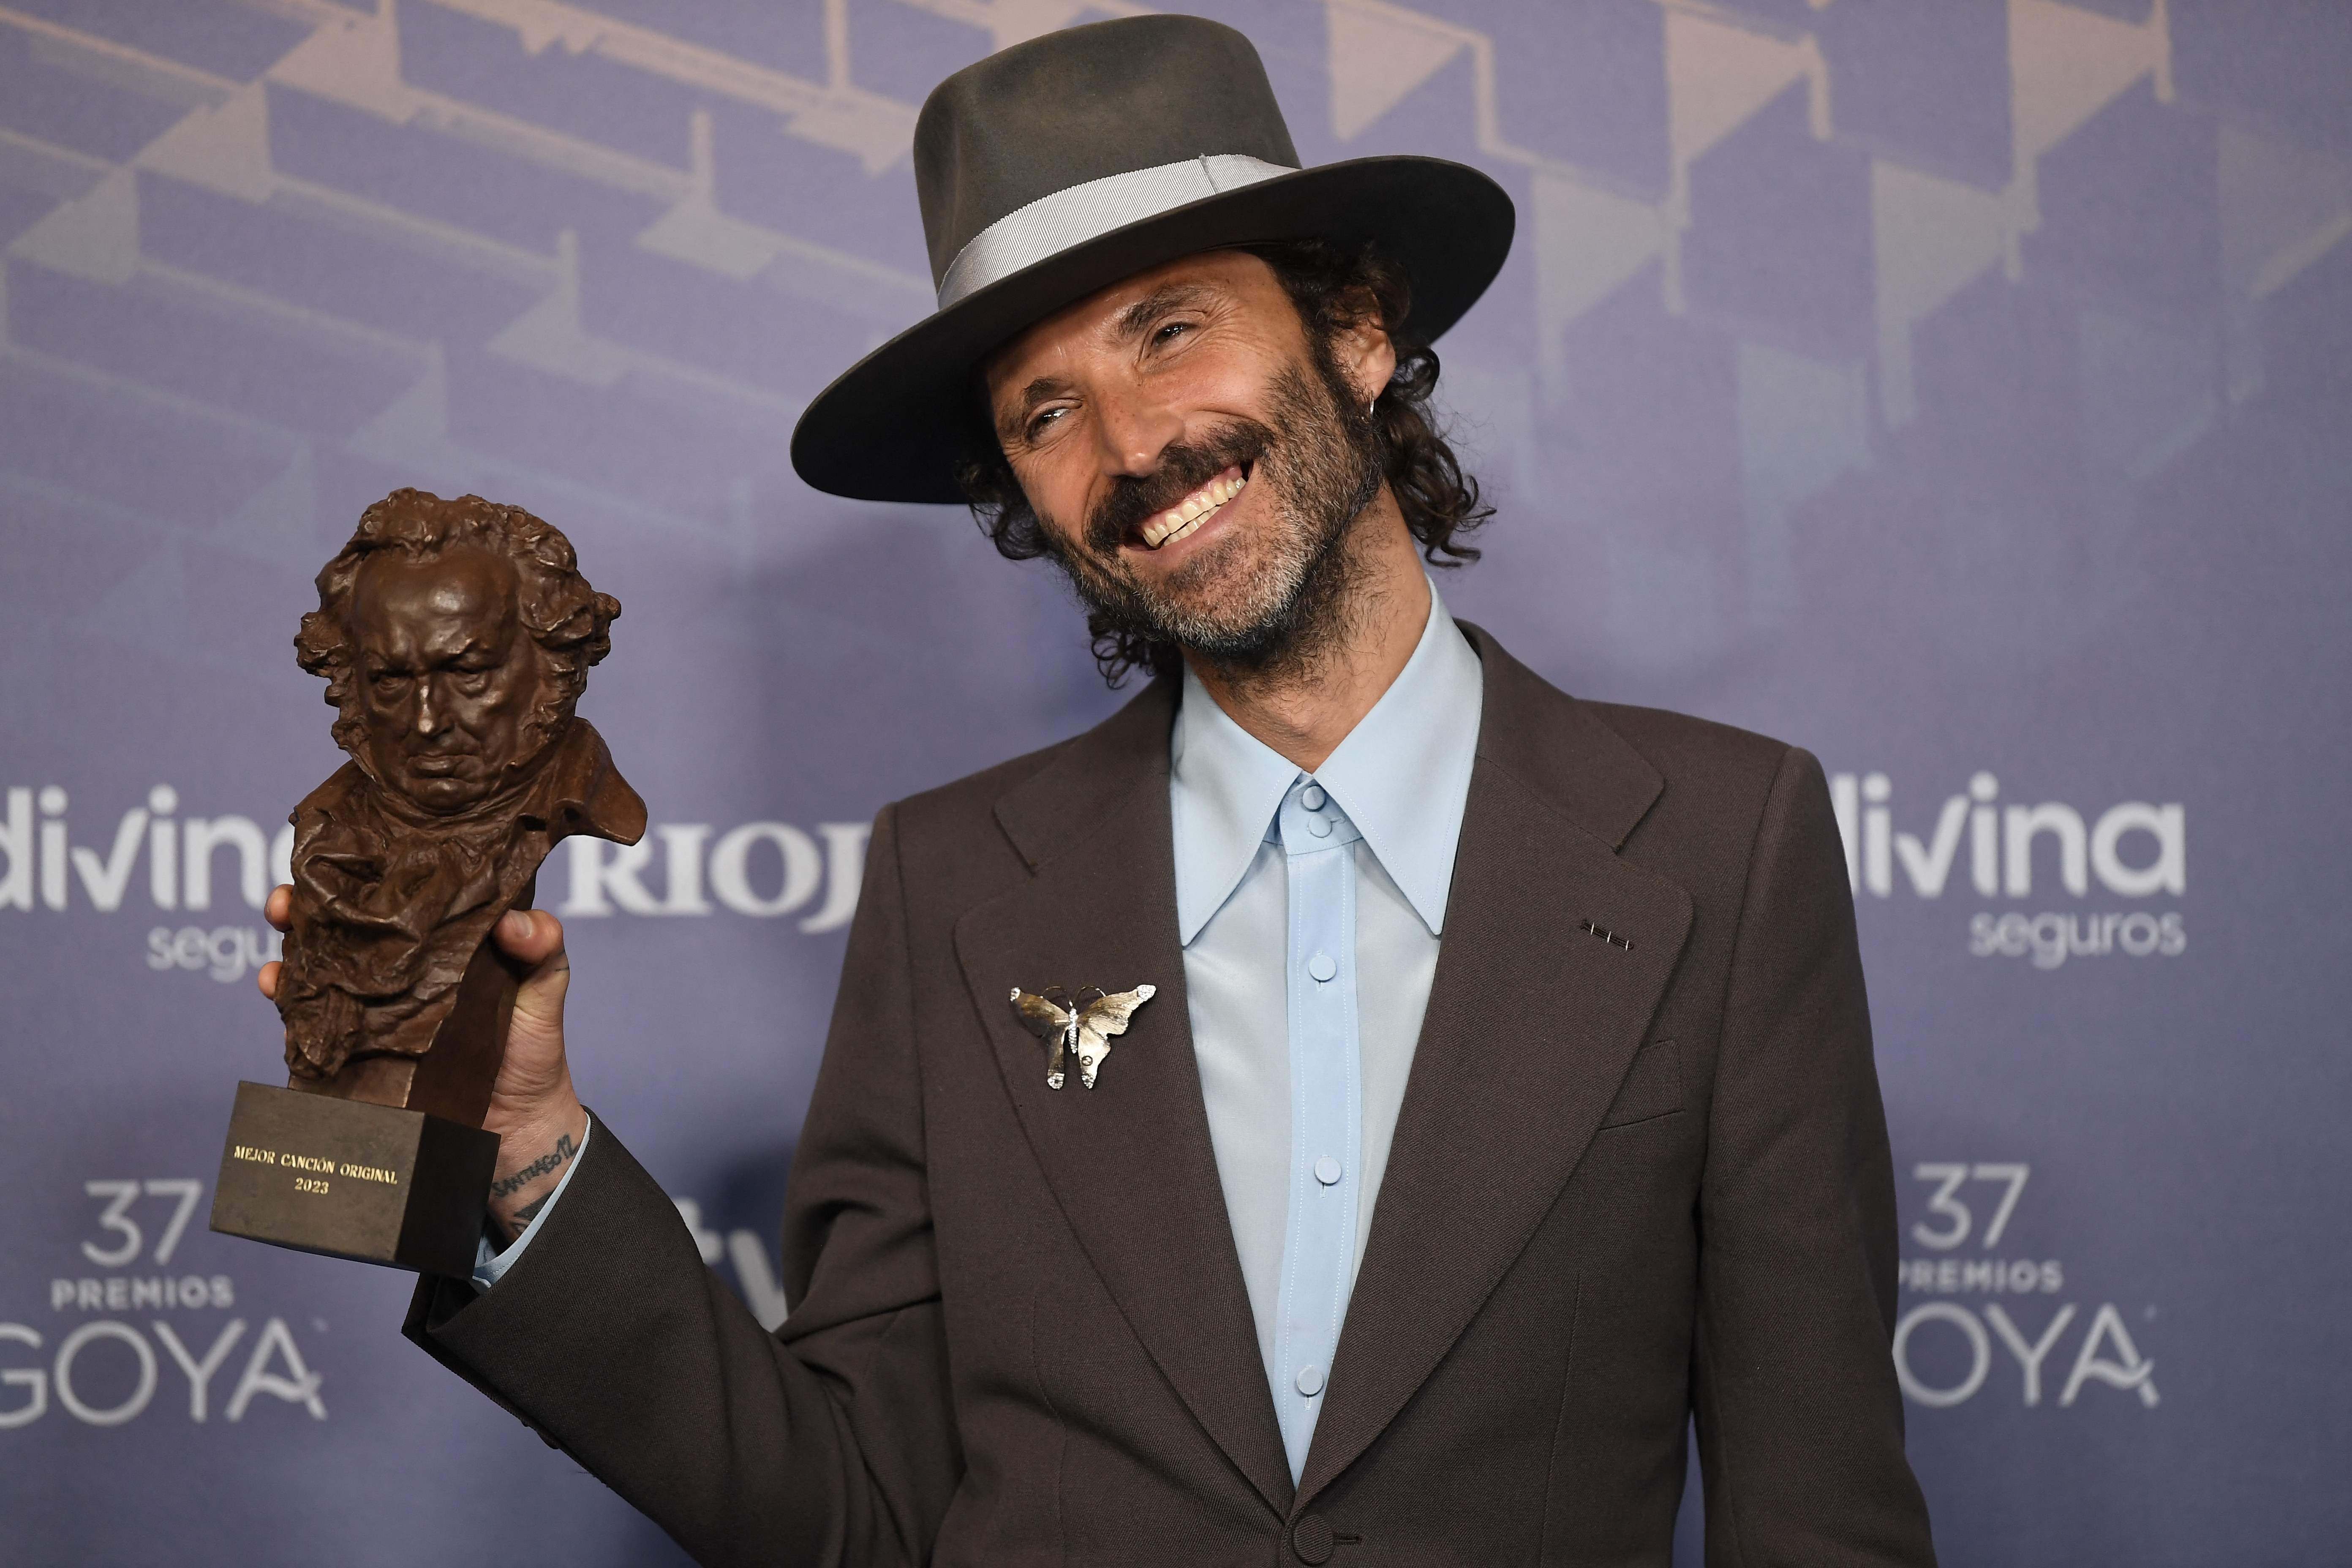 El músico español Leiva posa con su Goya a la mejor canción por "Sintiendolo Mucho" en la 37ª gala de los premios Goya en Sevilla.  (Foto Prensa Libre: AFP)